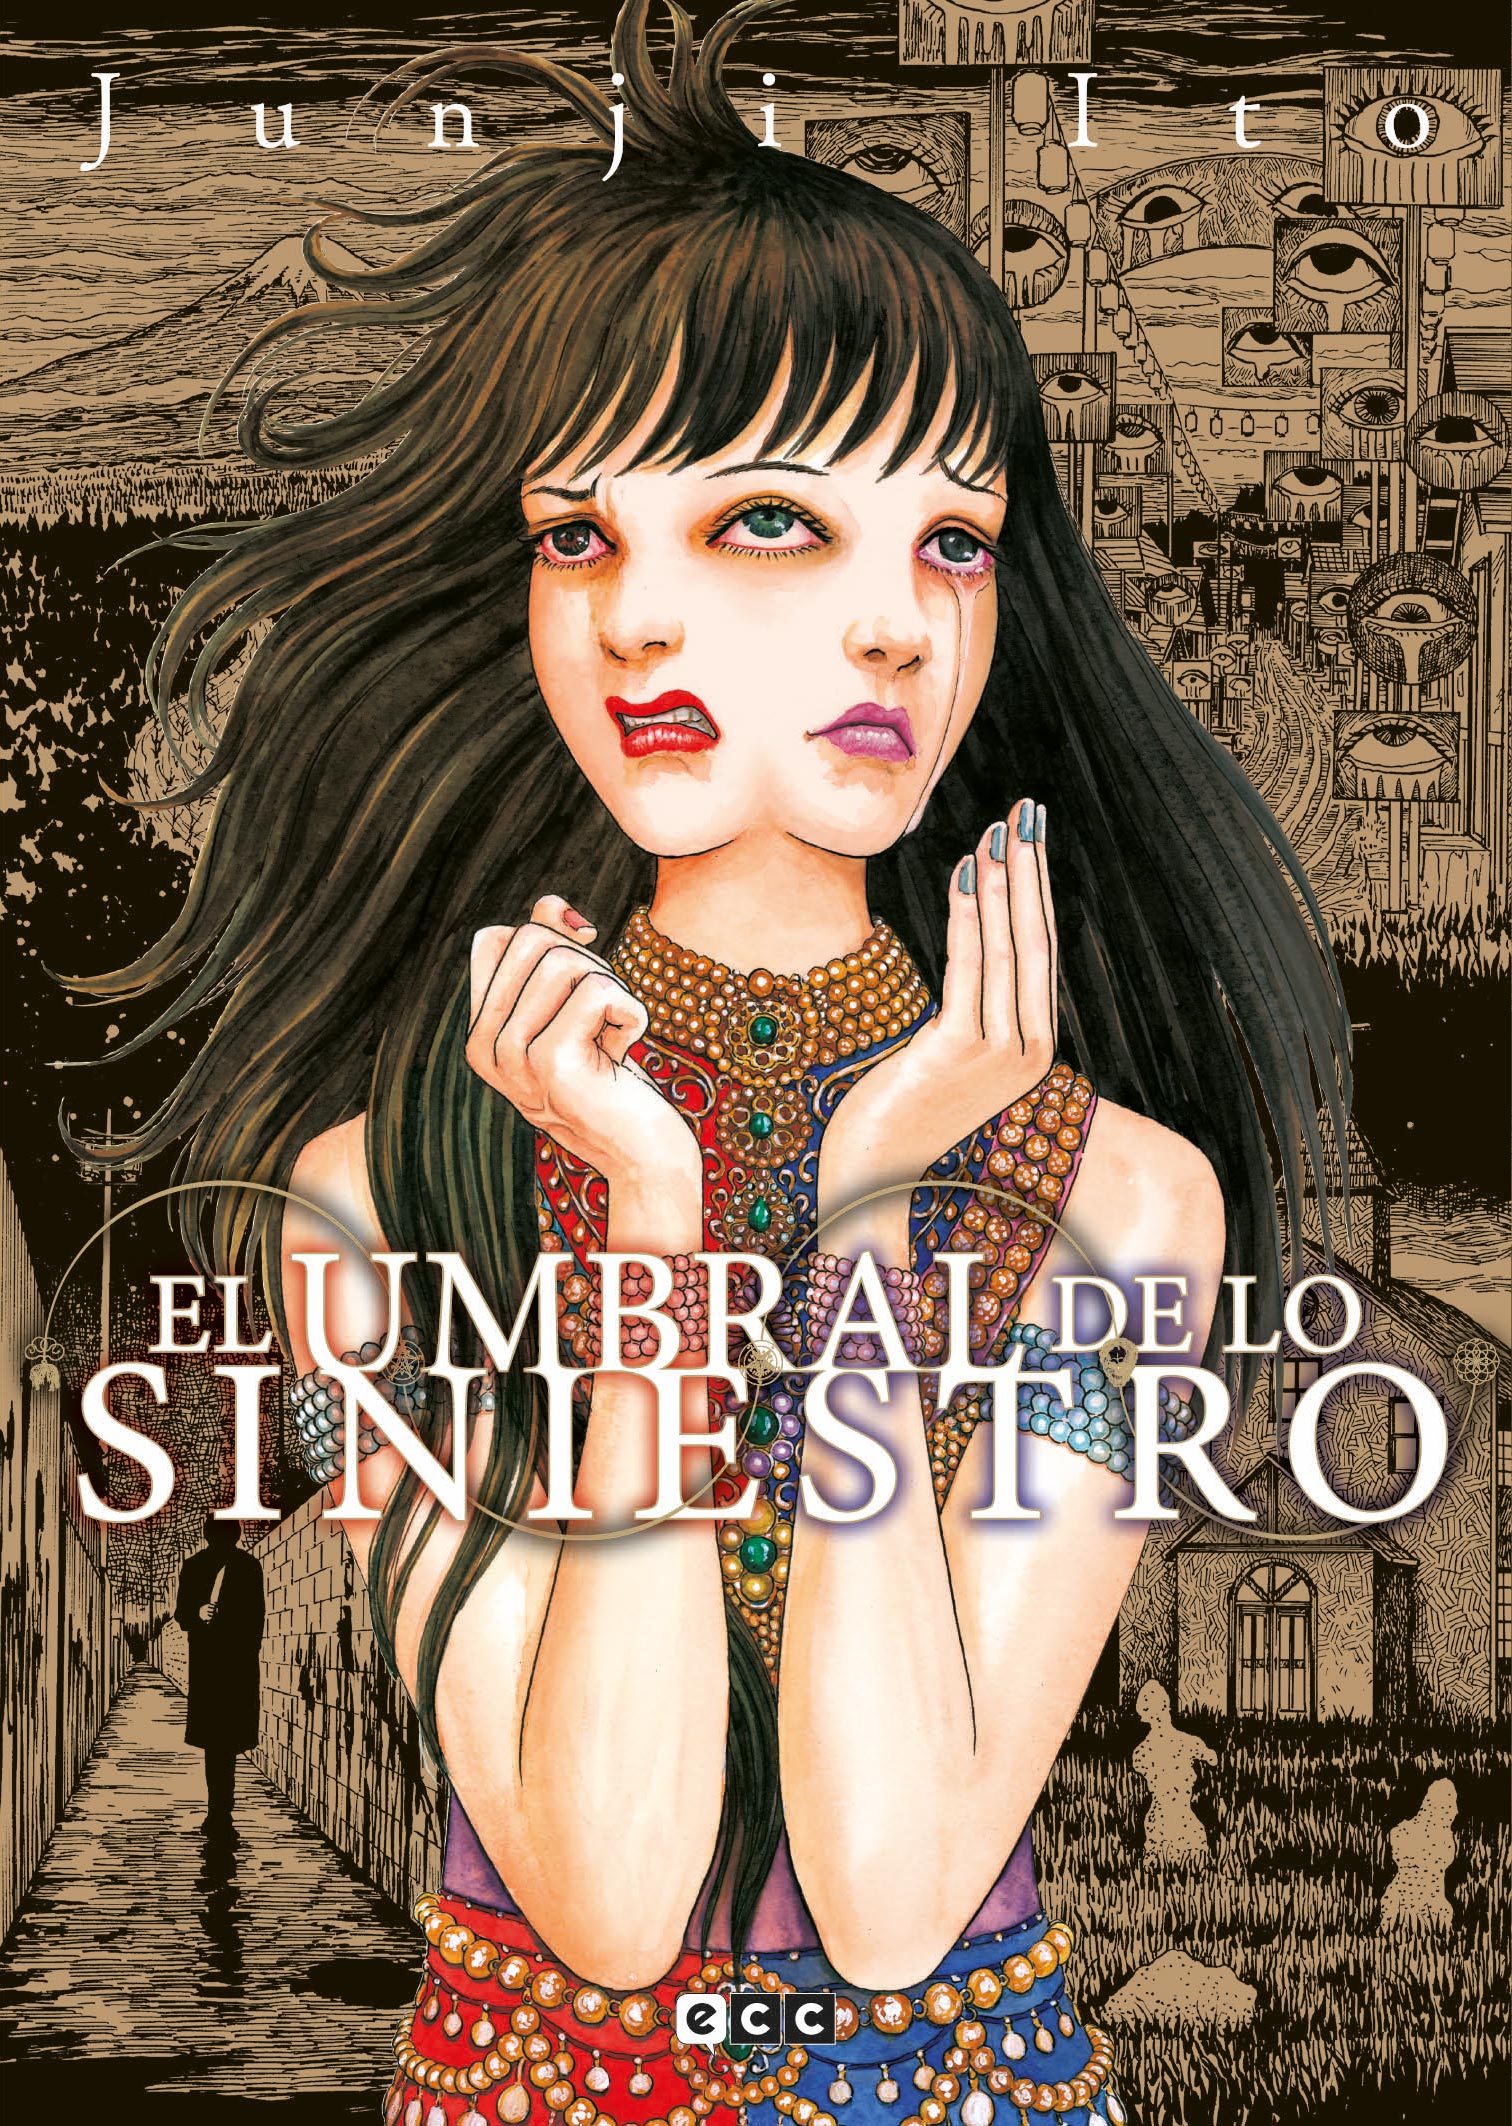 Junji Ito: El umbral de lo siniestro (GraphicNovel, Spanish language)